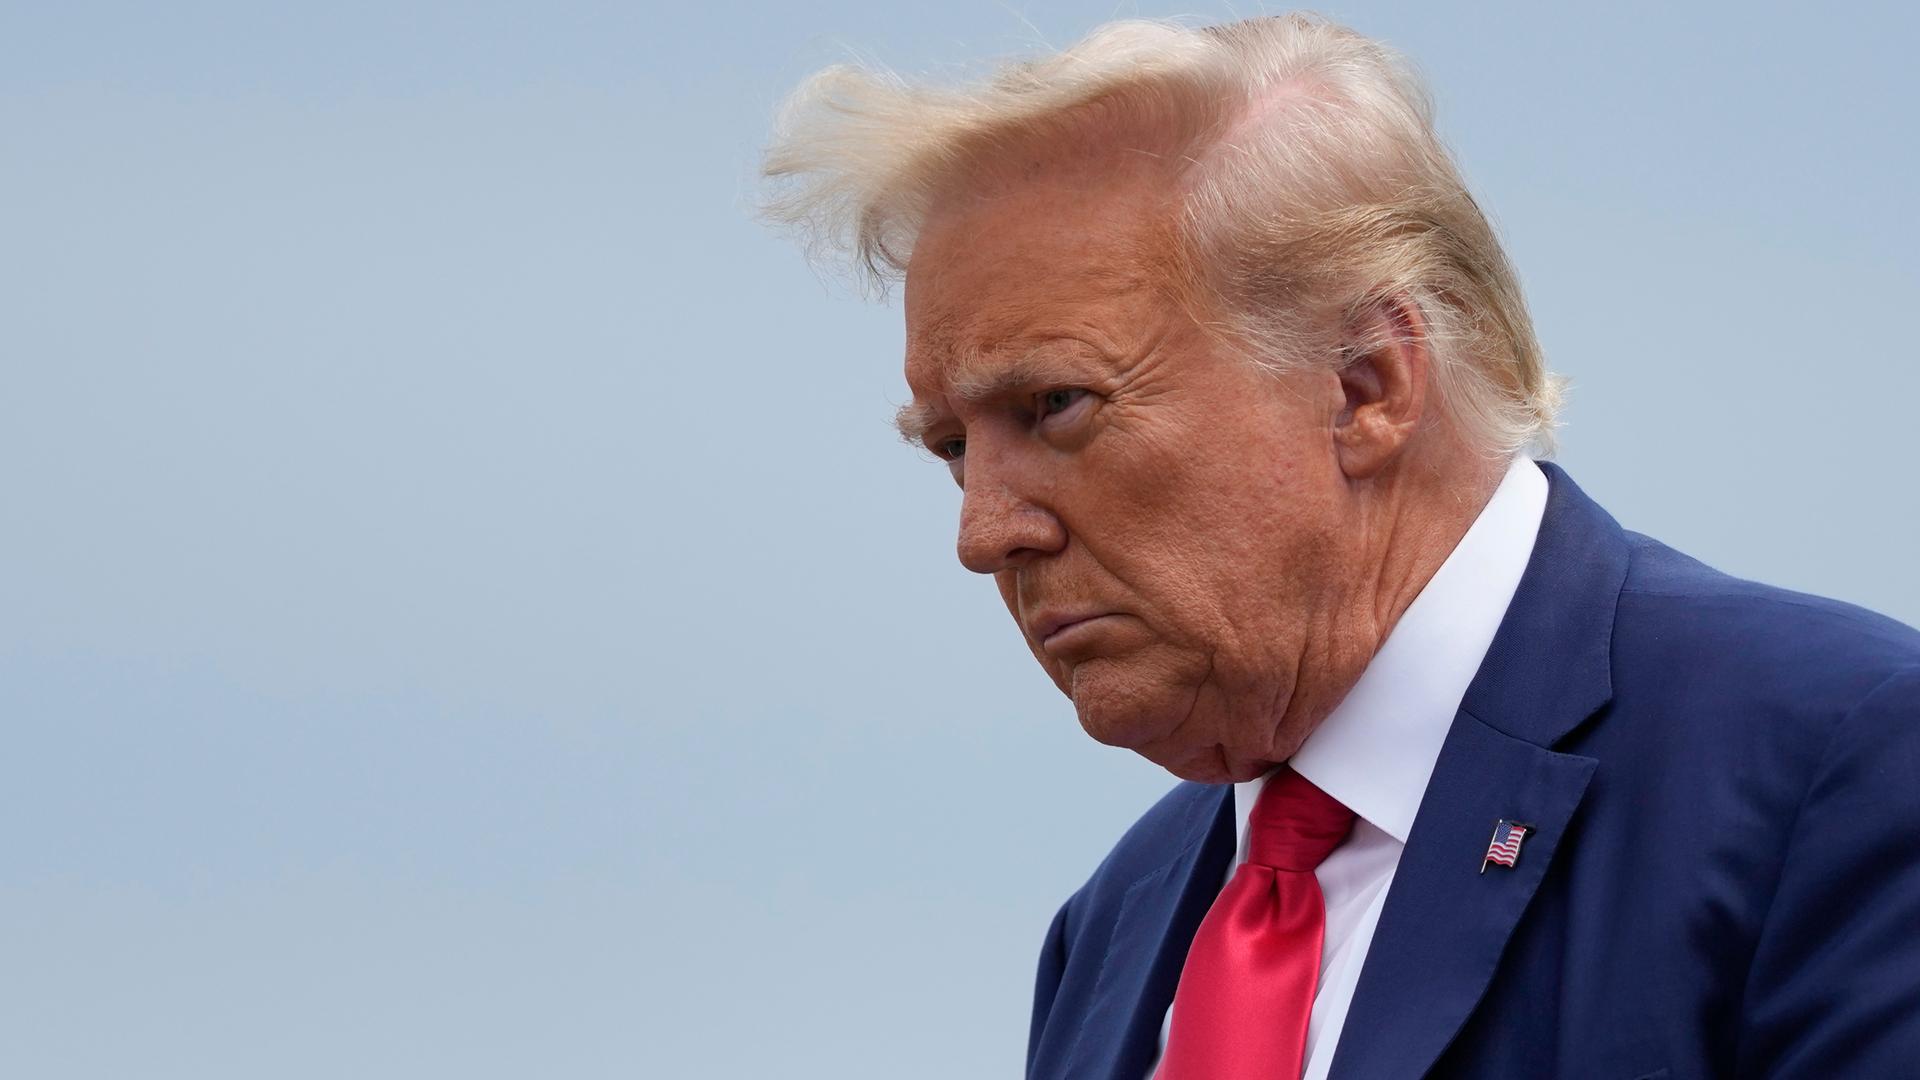 Eine Nahaufnahme von Donald Trumps Gesicht vor graublauem Himmel.